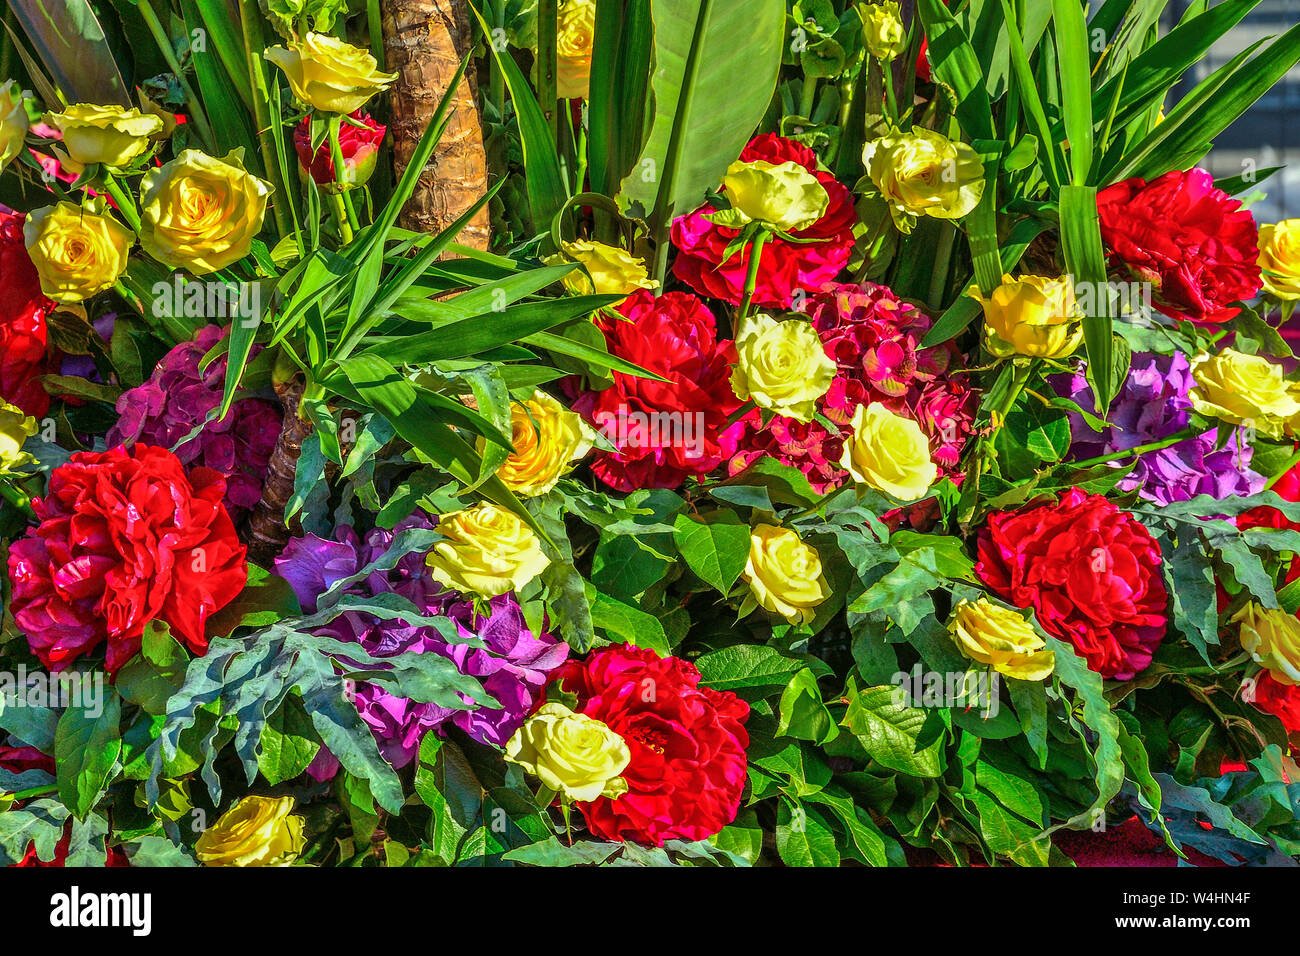 Brillante fiesta gozosa multicolor fondo floral de rojo peonías, rosas amarillas y púrpura hydrangea con hojas verdes. Sentimiento, expresando placer Foto de stock